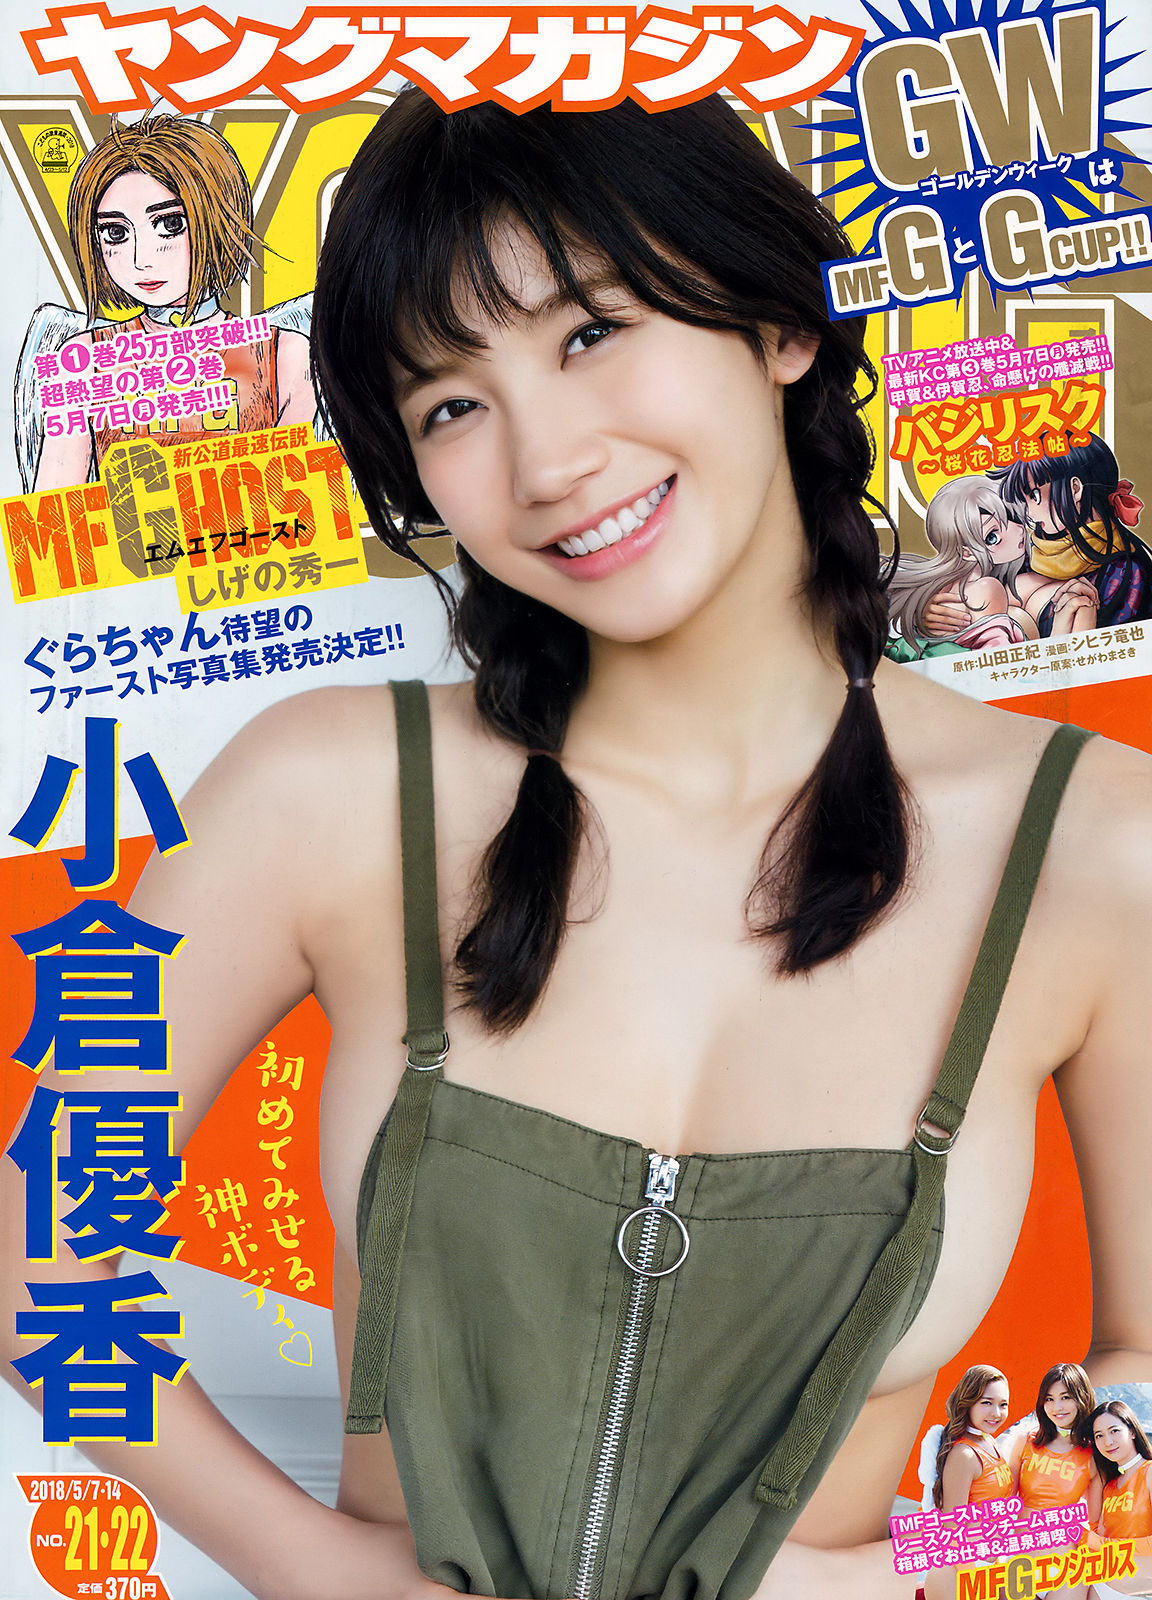 [Young Magazine]日本嫩模:小仓优香(小倉優香)高品质写真作品个人分享(12P)